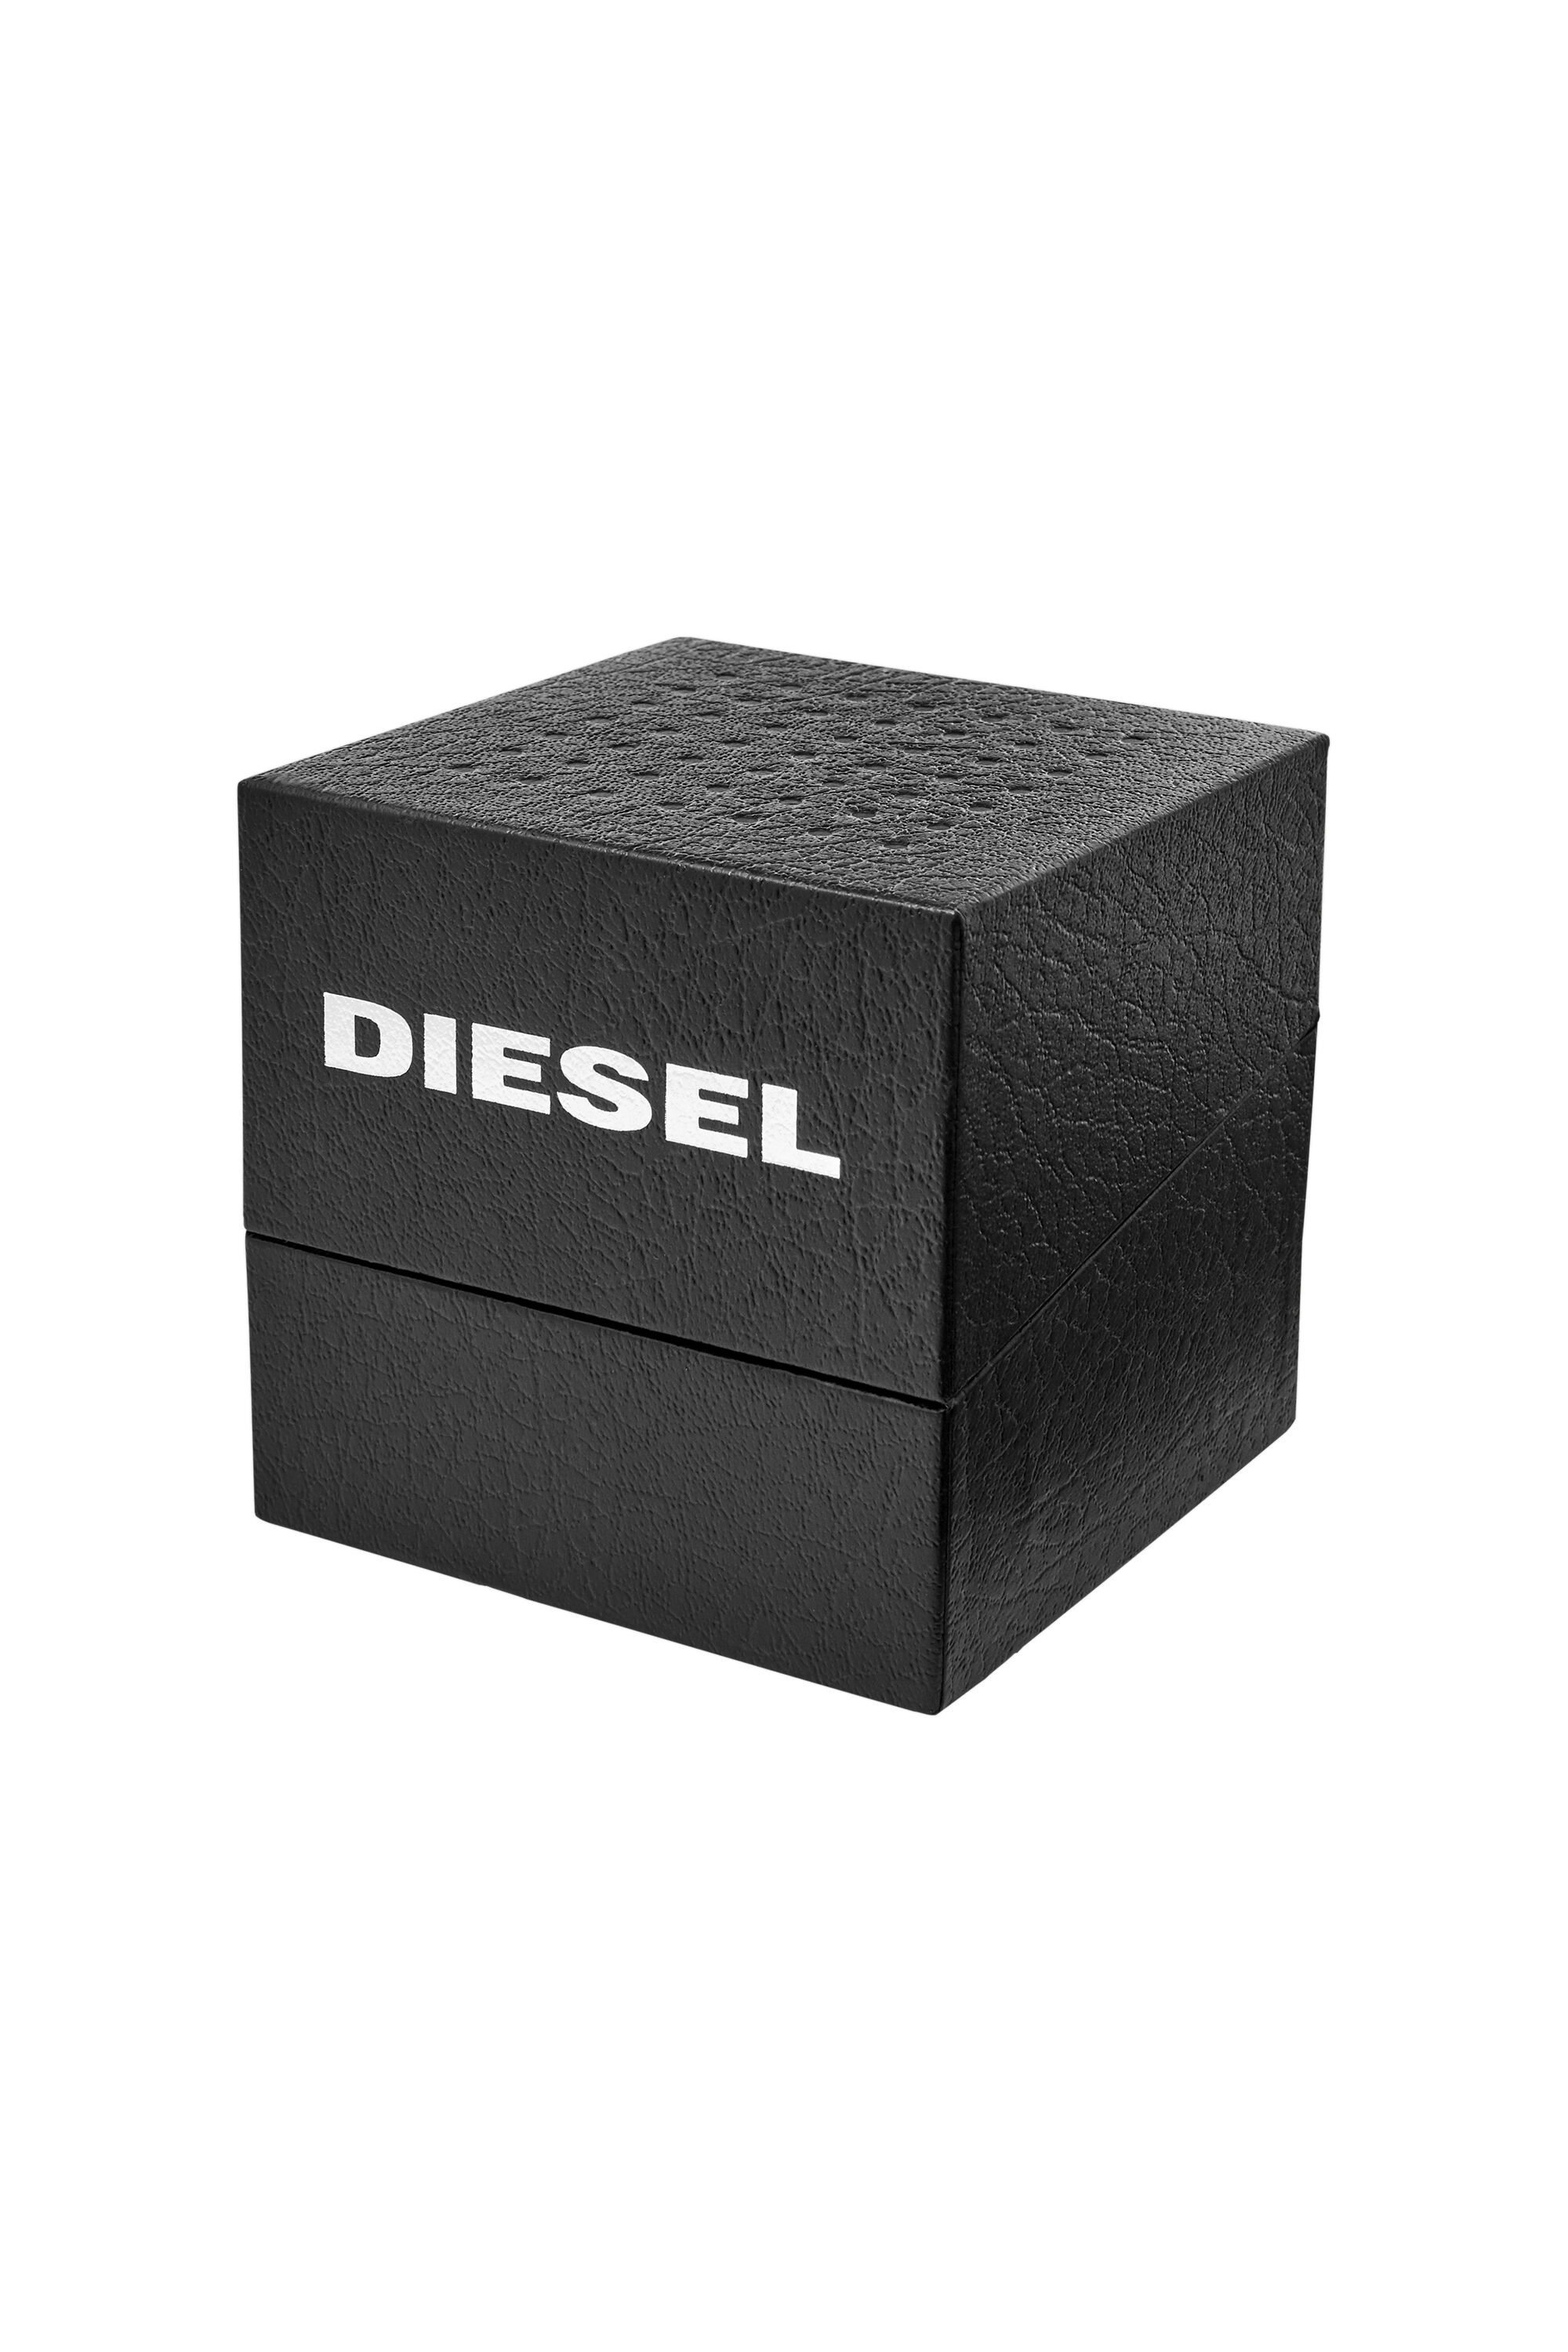 Diesel - DZ1907, Schwarz - Image 5